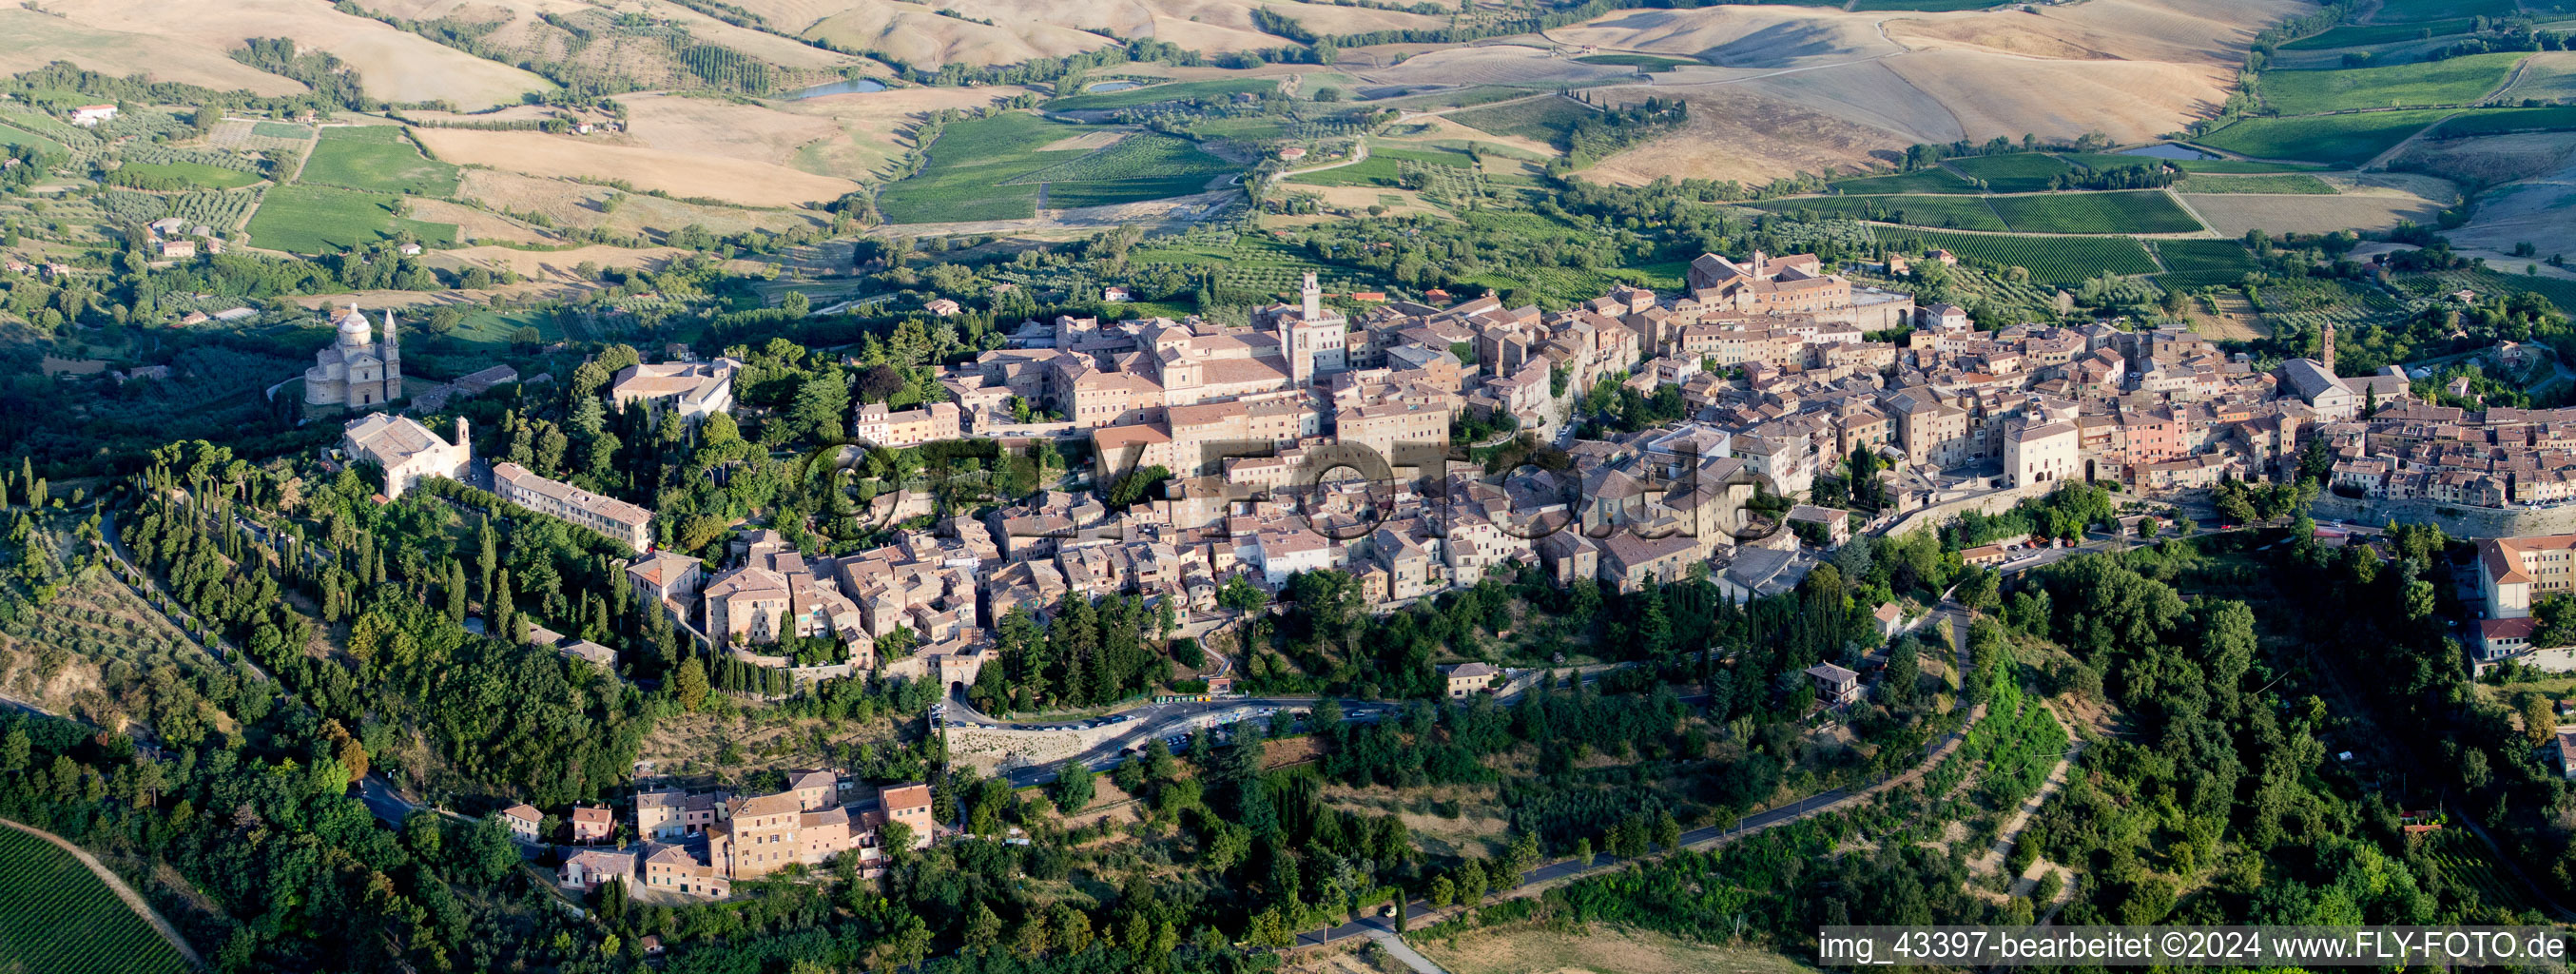 Panorama vom Ortsbereich und der Umgebung in Montepulciano in Toscana, Italien